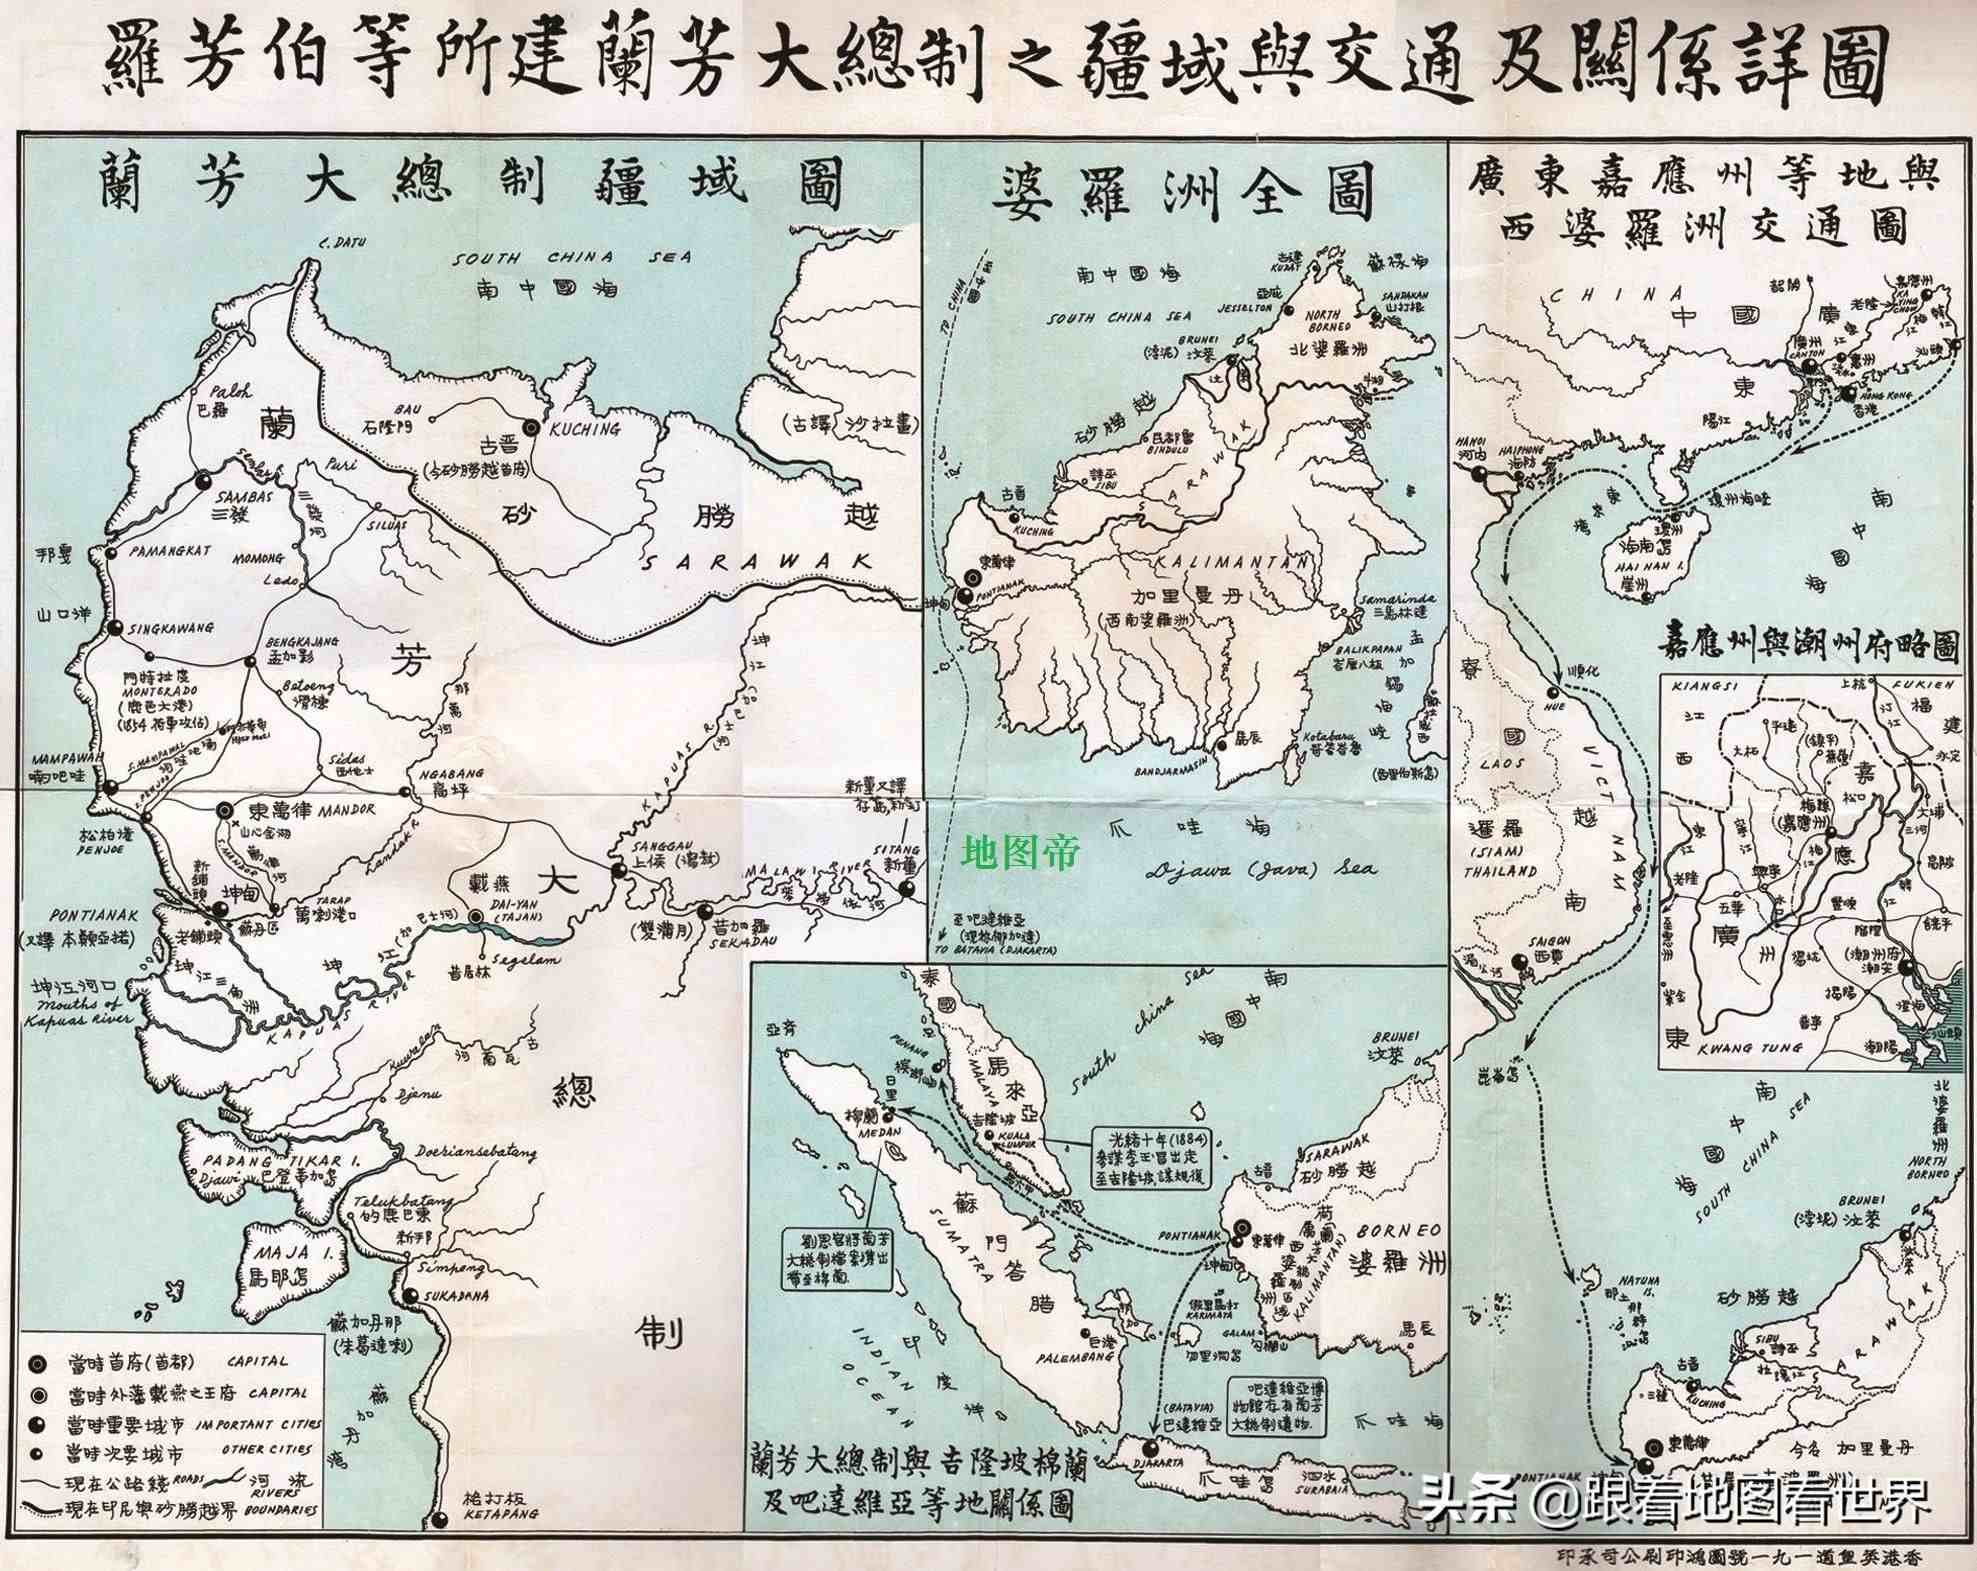 客家人建立的亚洲史上第一个共和国：“兰芳共和国”